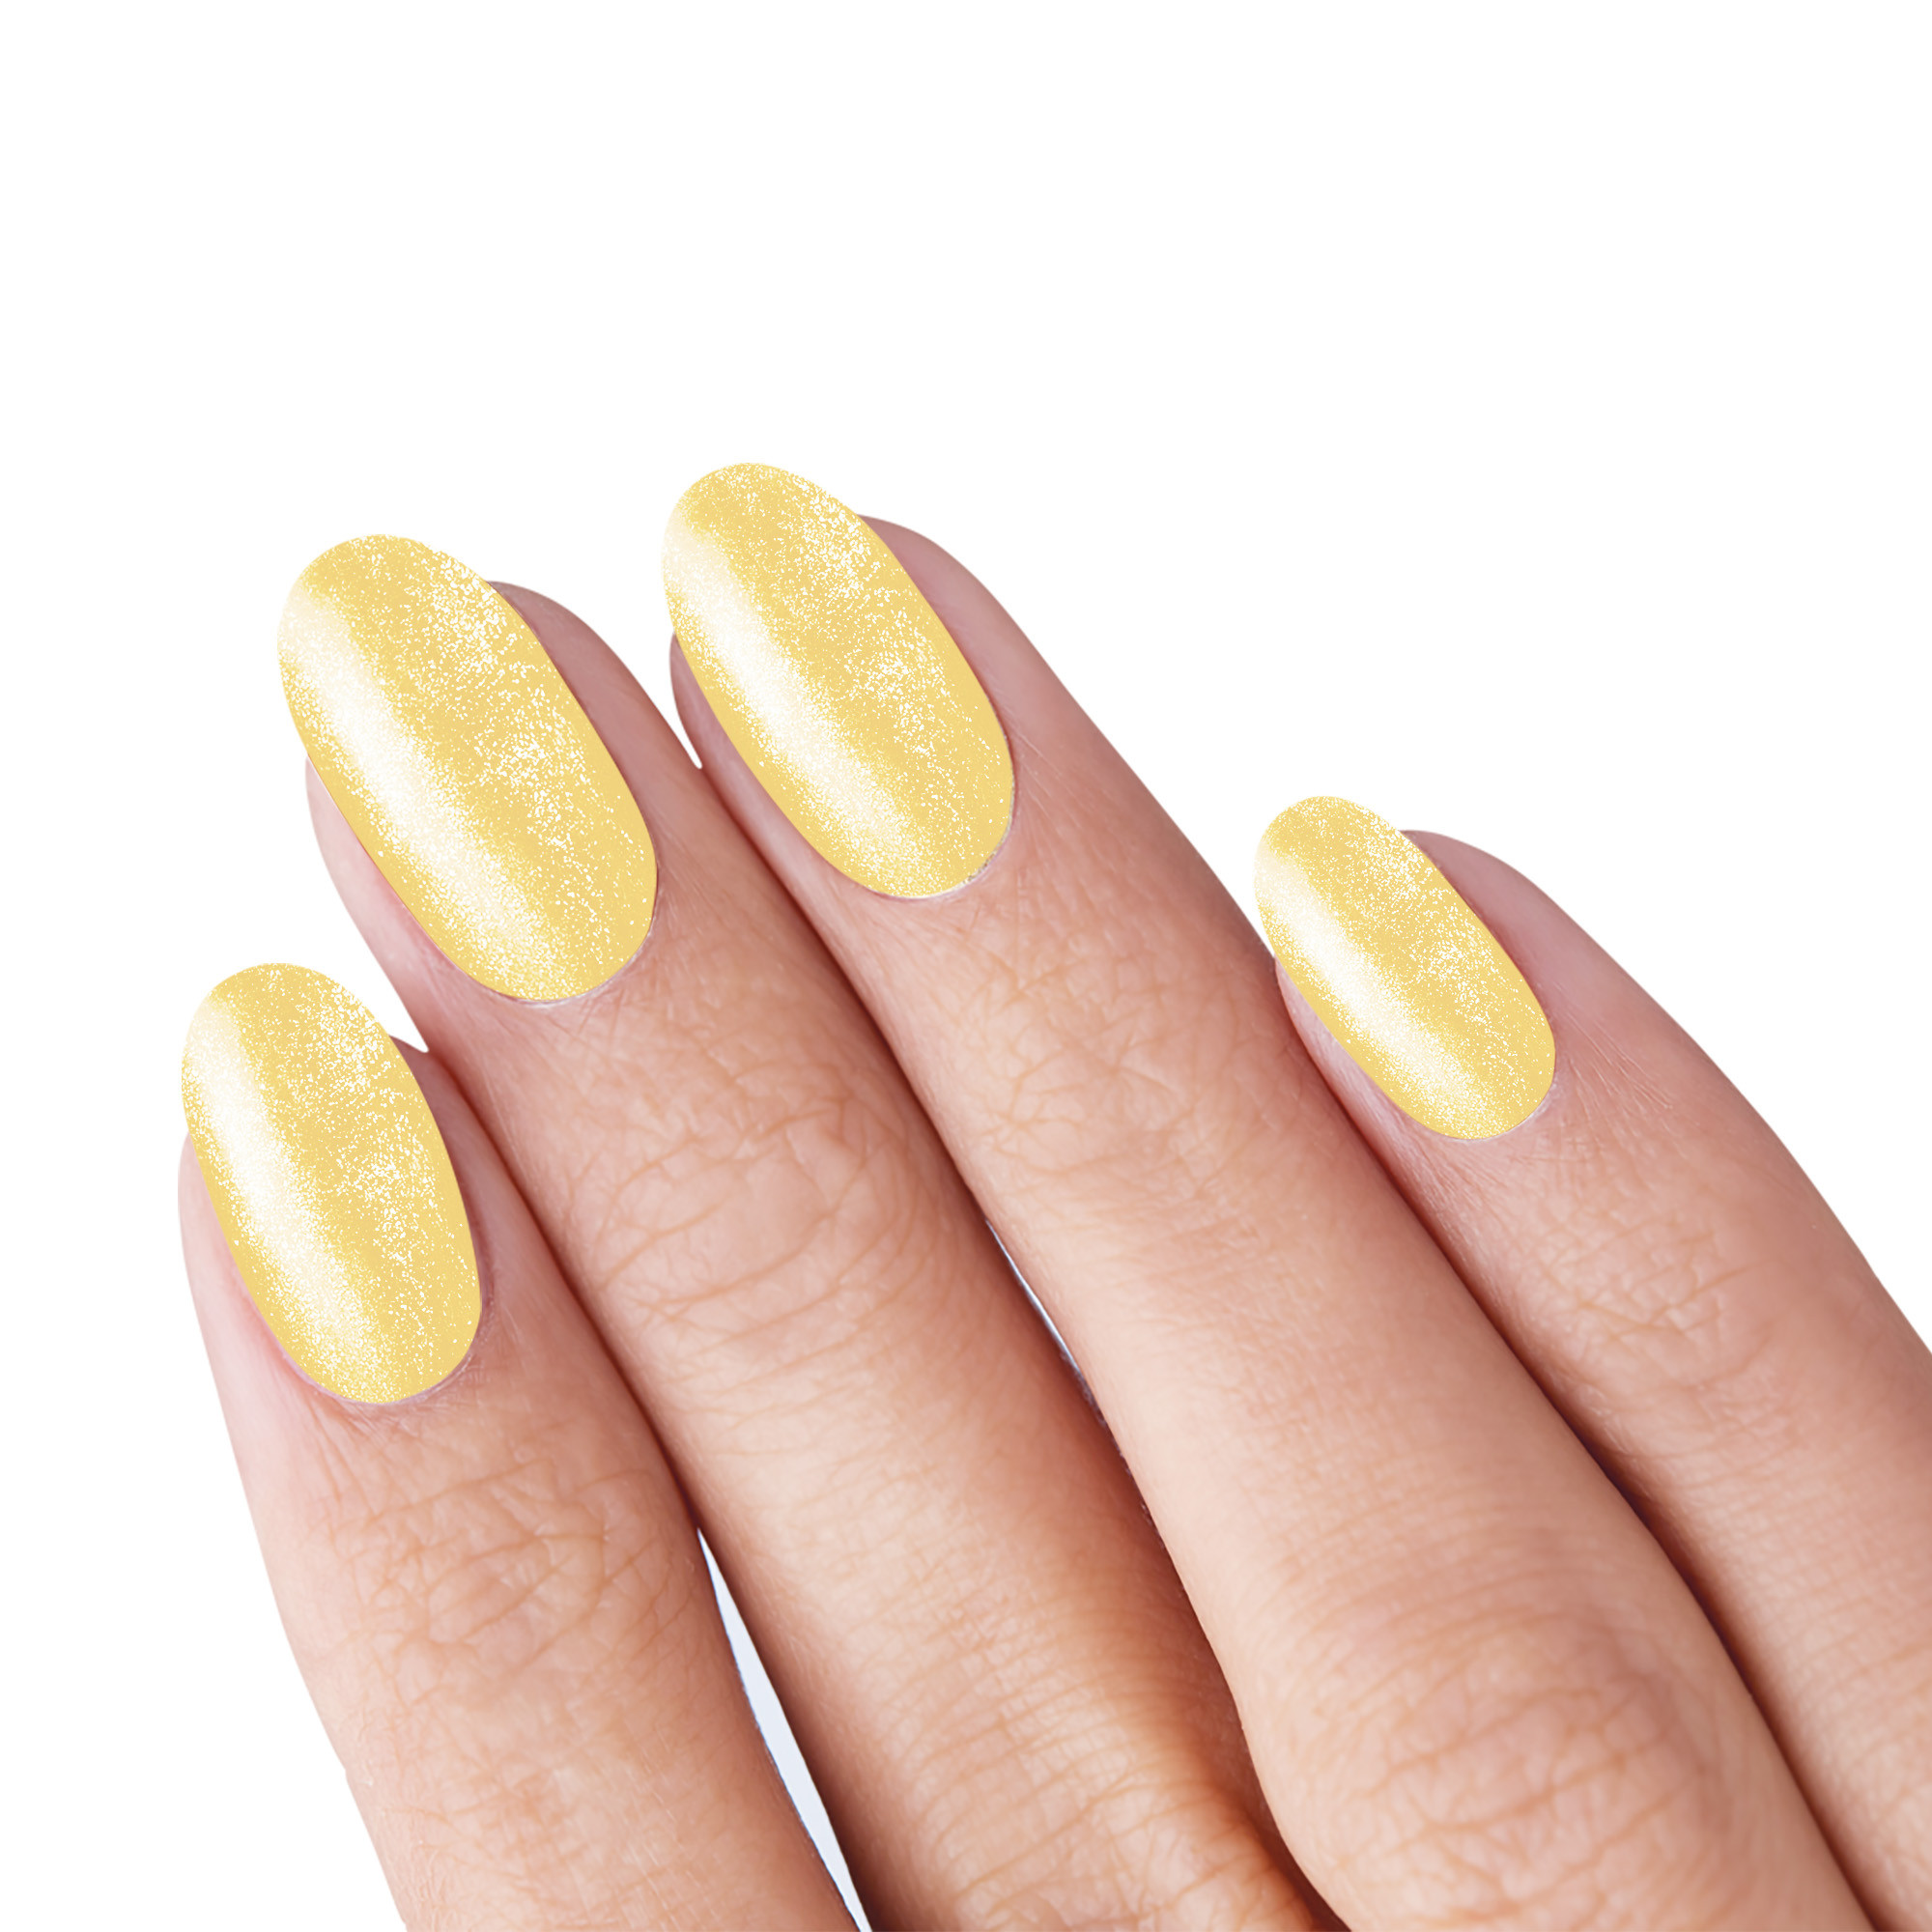 Smalto semipermanente glitter oro Gold Glitter 10 ml Laqerìs TNS